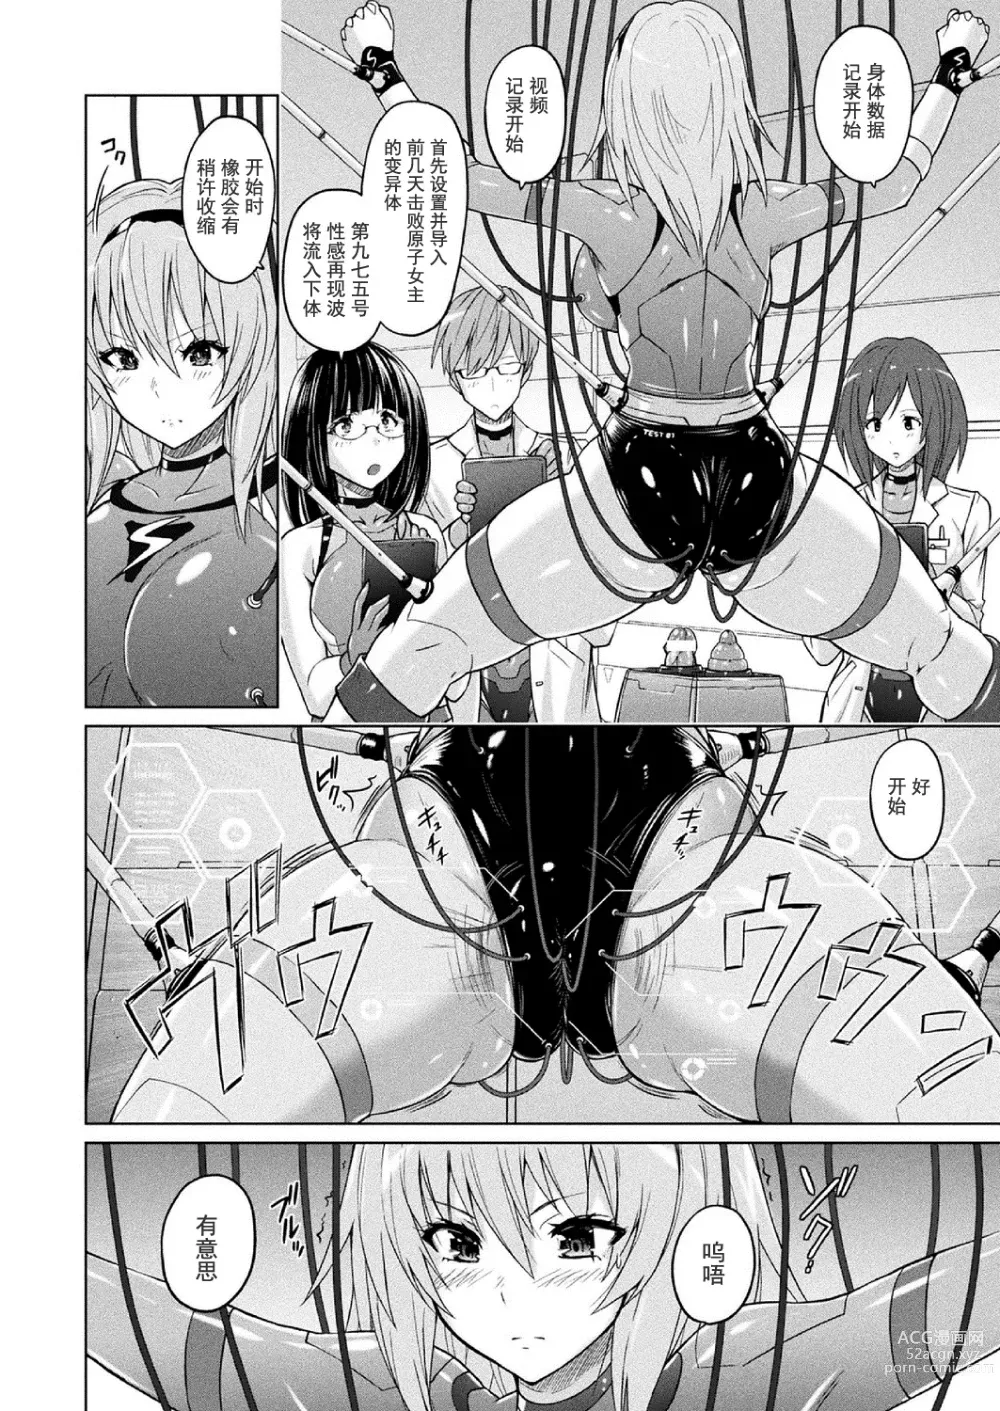 Page 5 of manga 胖次实验室 正篇+加笔【精神胡萝卜尚西·尚特耐脑控汉化】